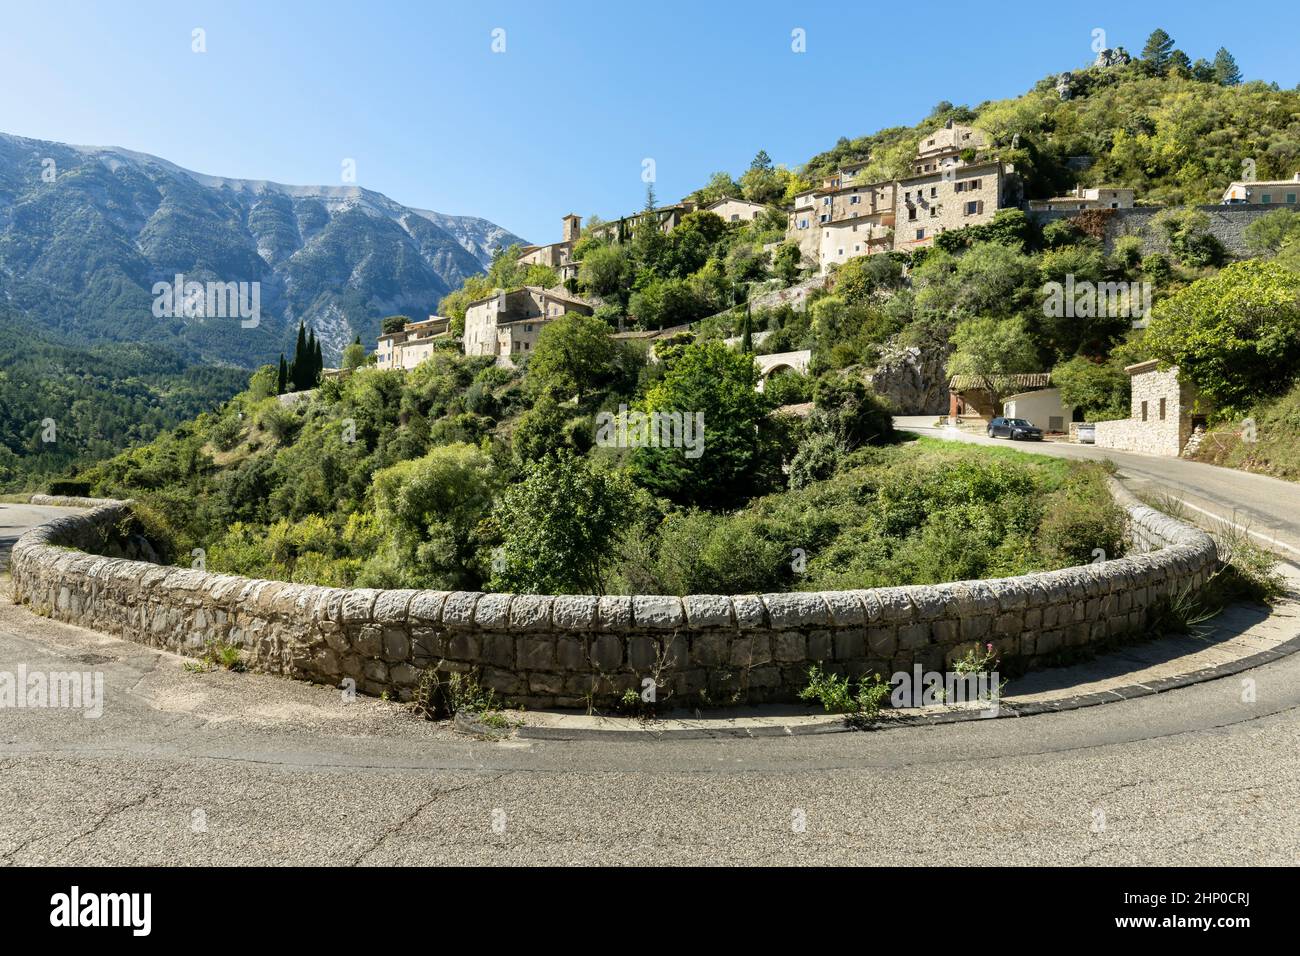 Le village de montagne de Brantes dans le département du Vaucluse, France, région Provence-Alpes-Côte d’Azur Banque D'Images